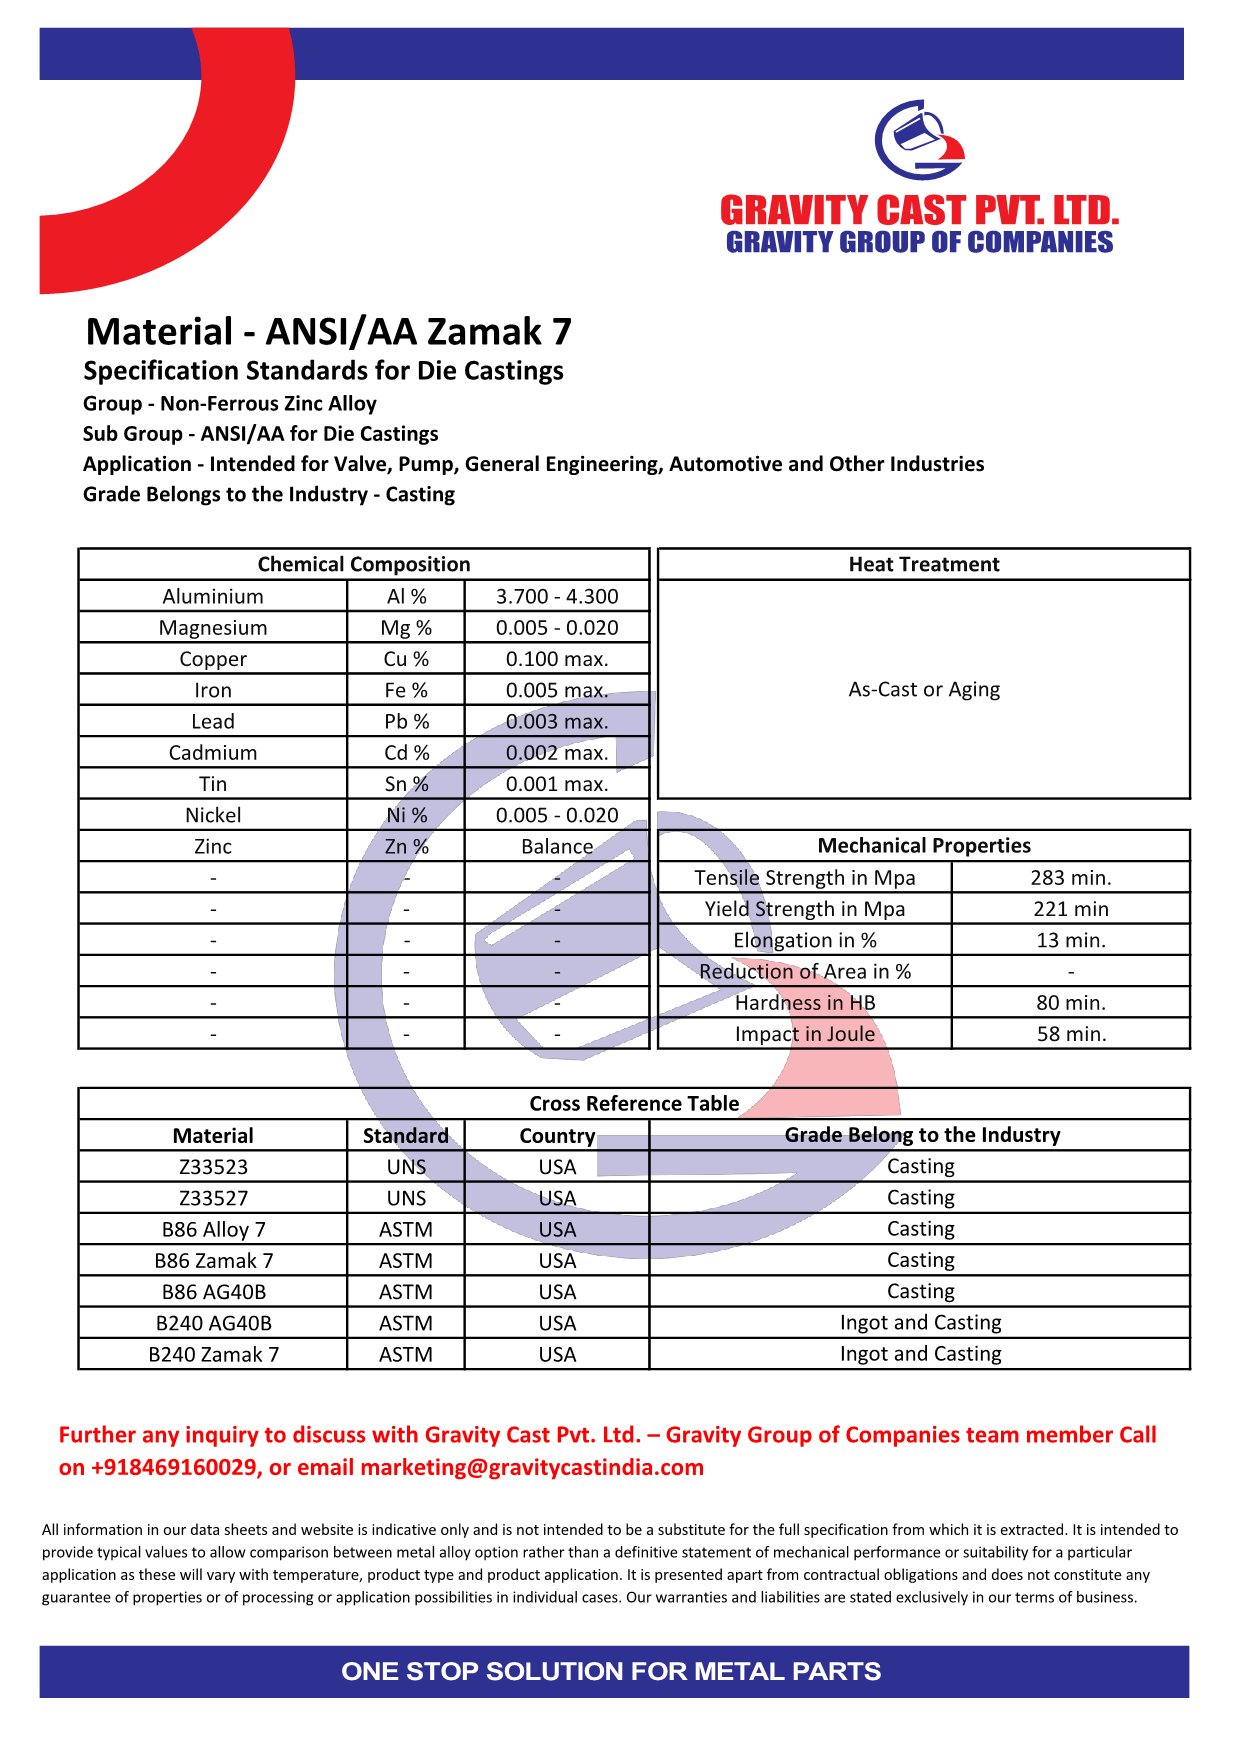 ANSI AA Zamak 7.pdf